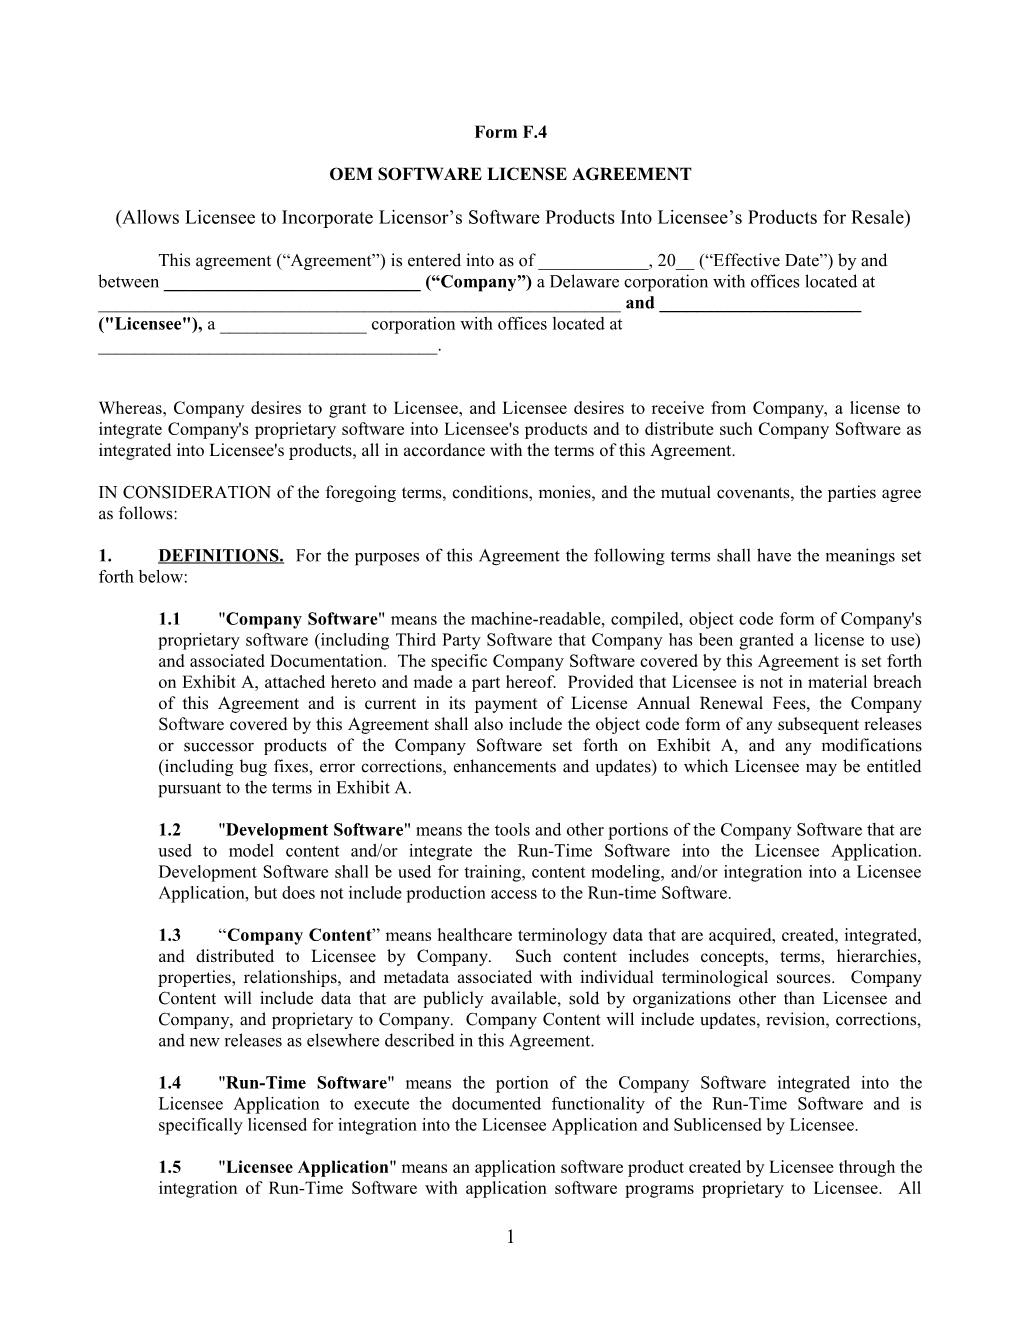 HLI ISV Software License Agreement